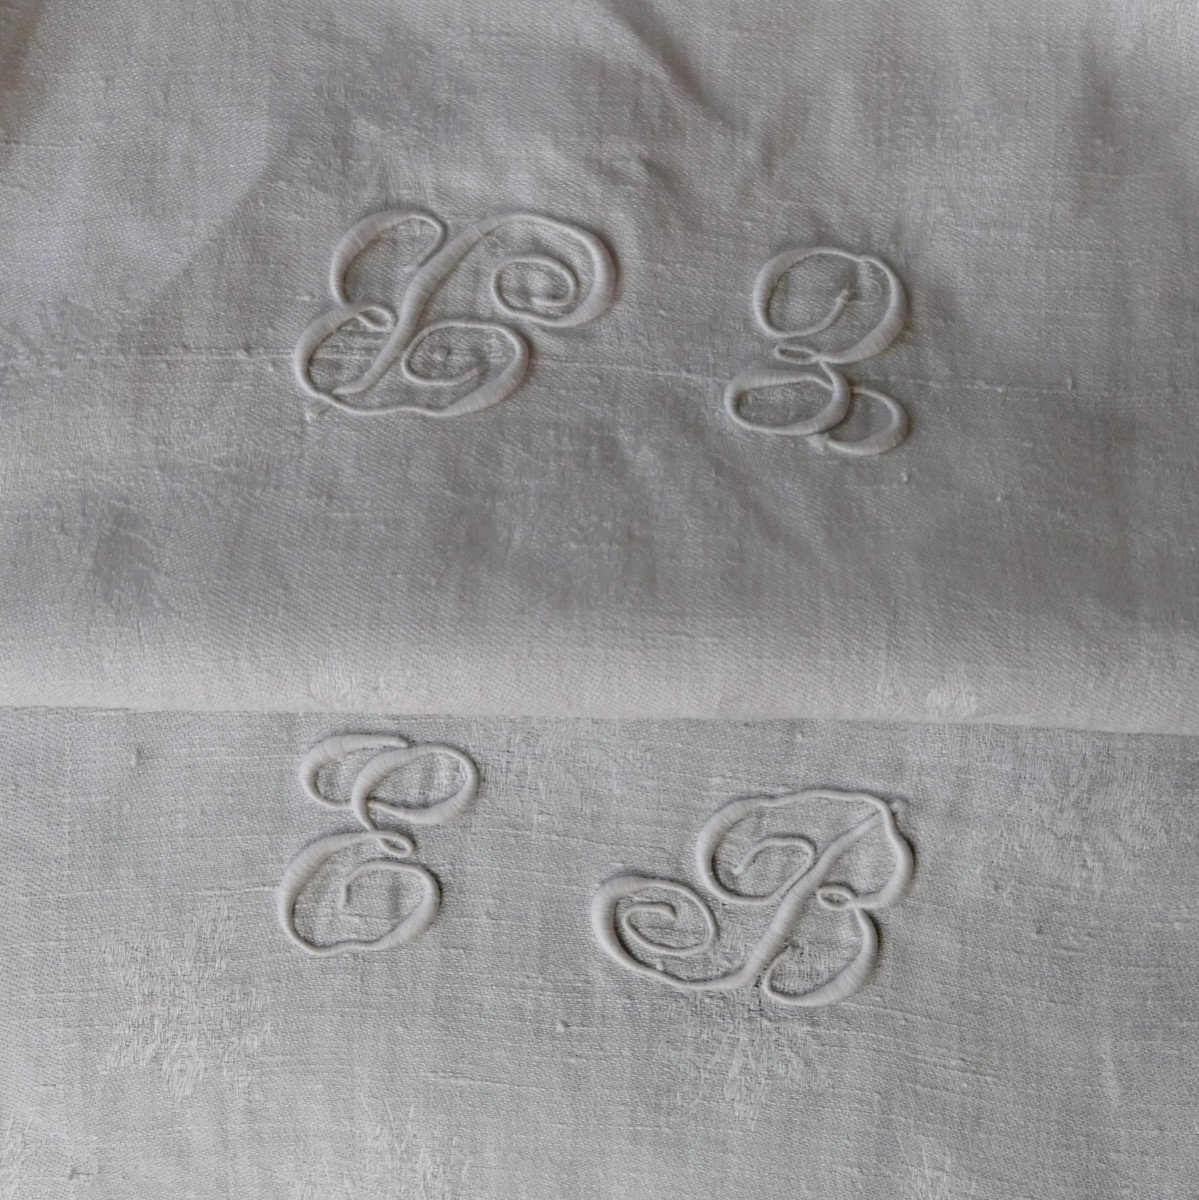 Double Monogram Damask Tablecloth “eb”, Art Nouveau.-photo-2